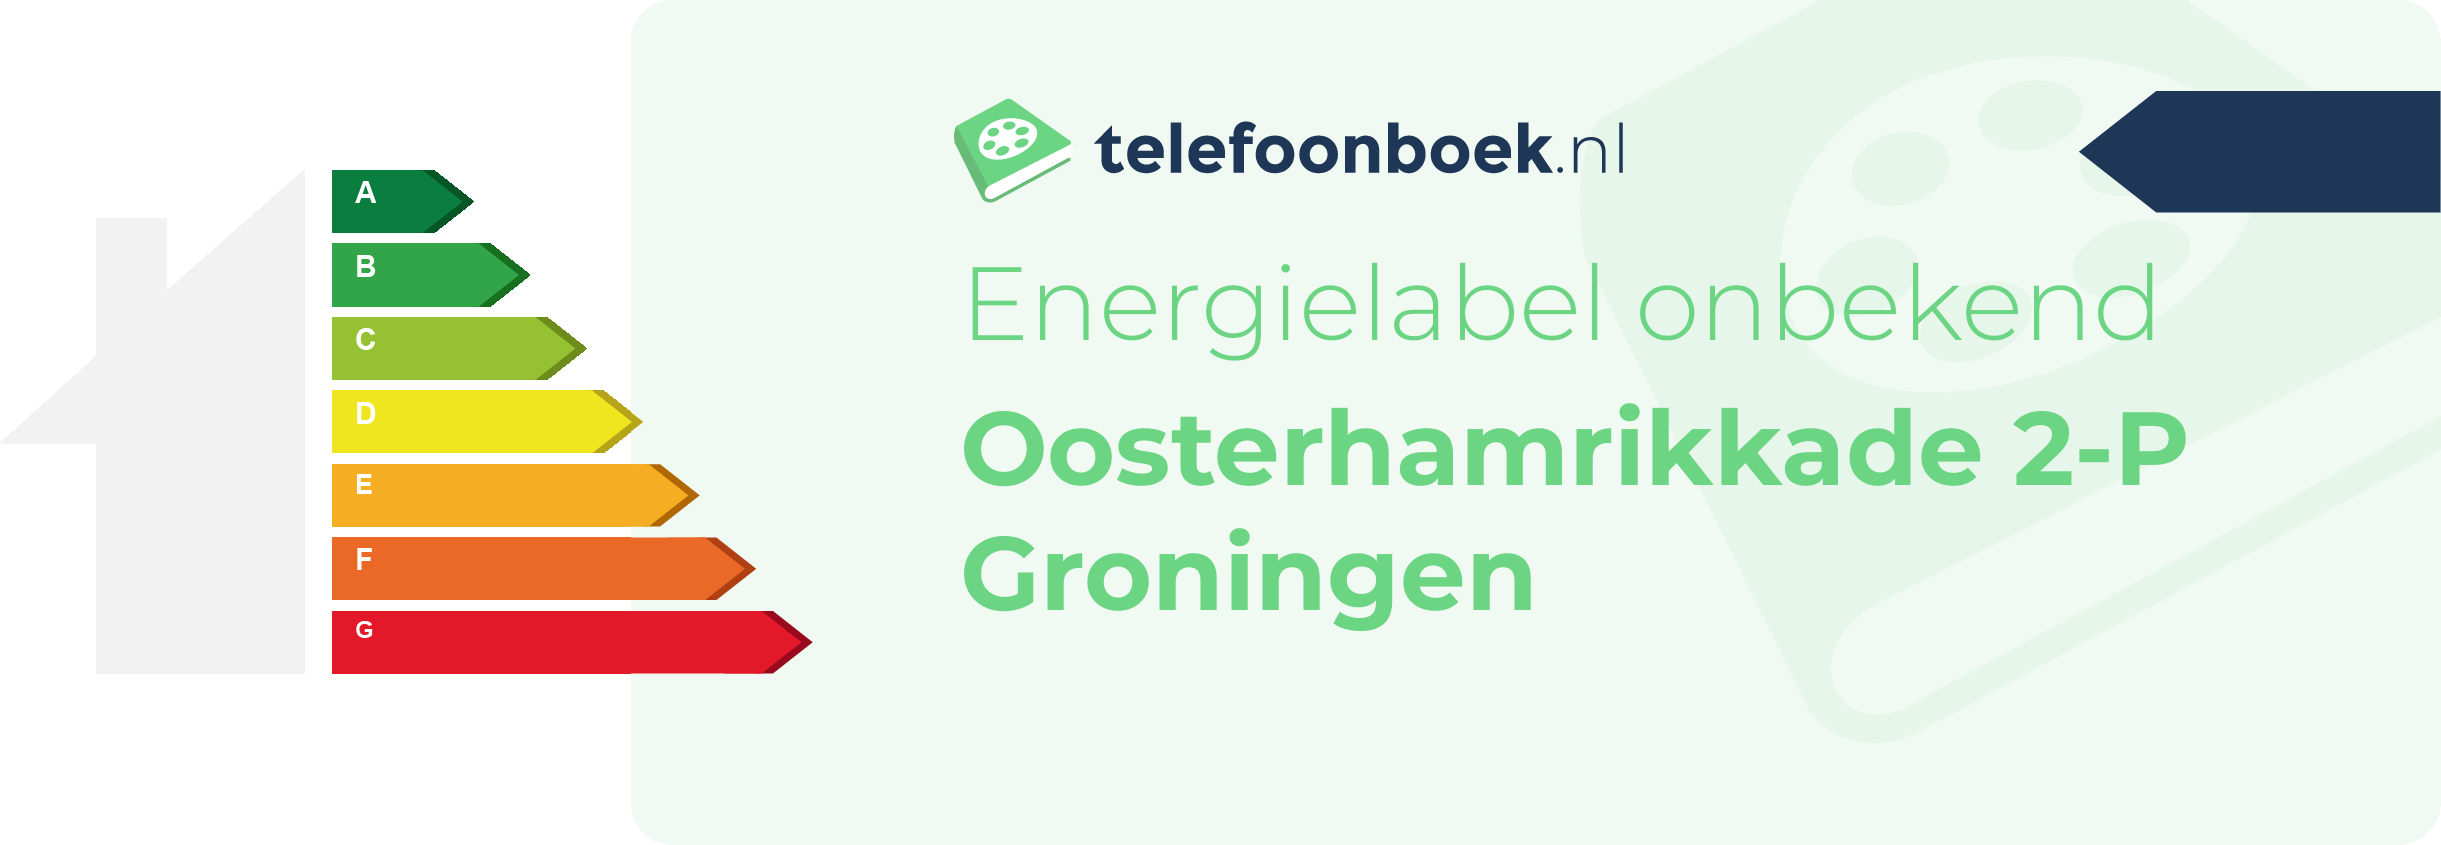 Energielabel Oosterhamrikkade 2-P Groningen